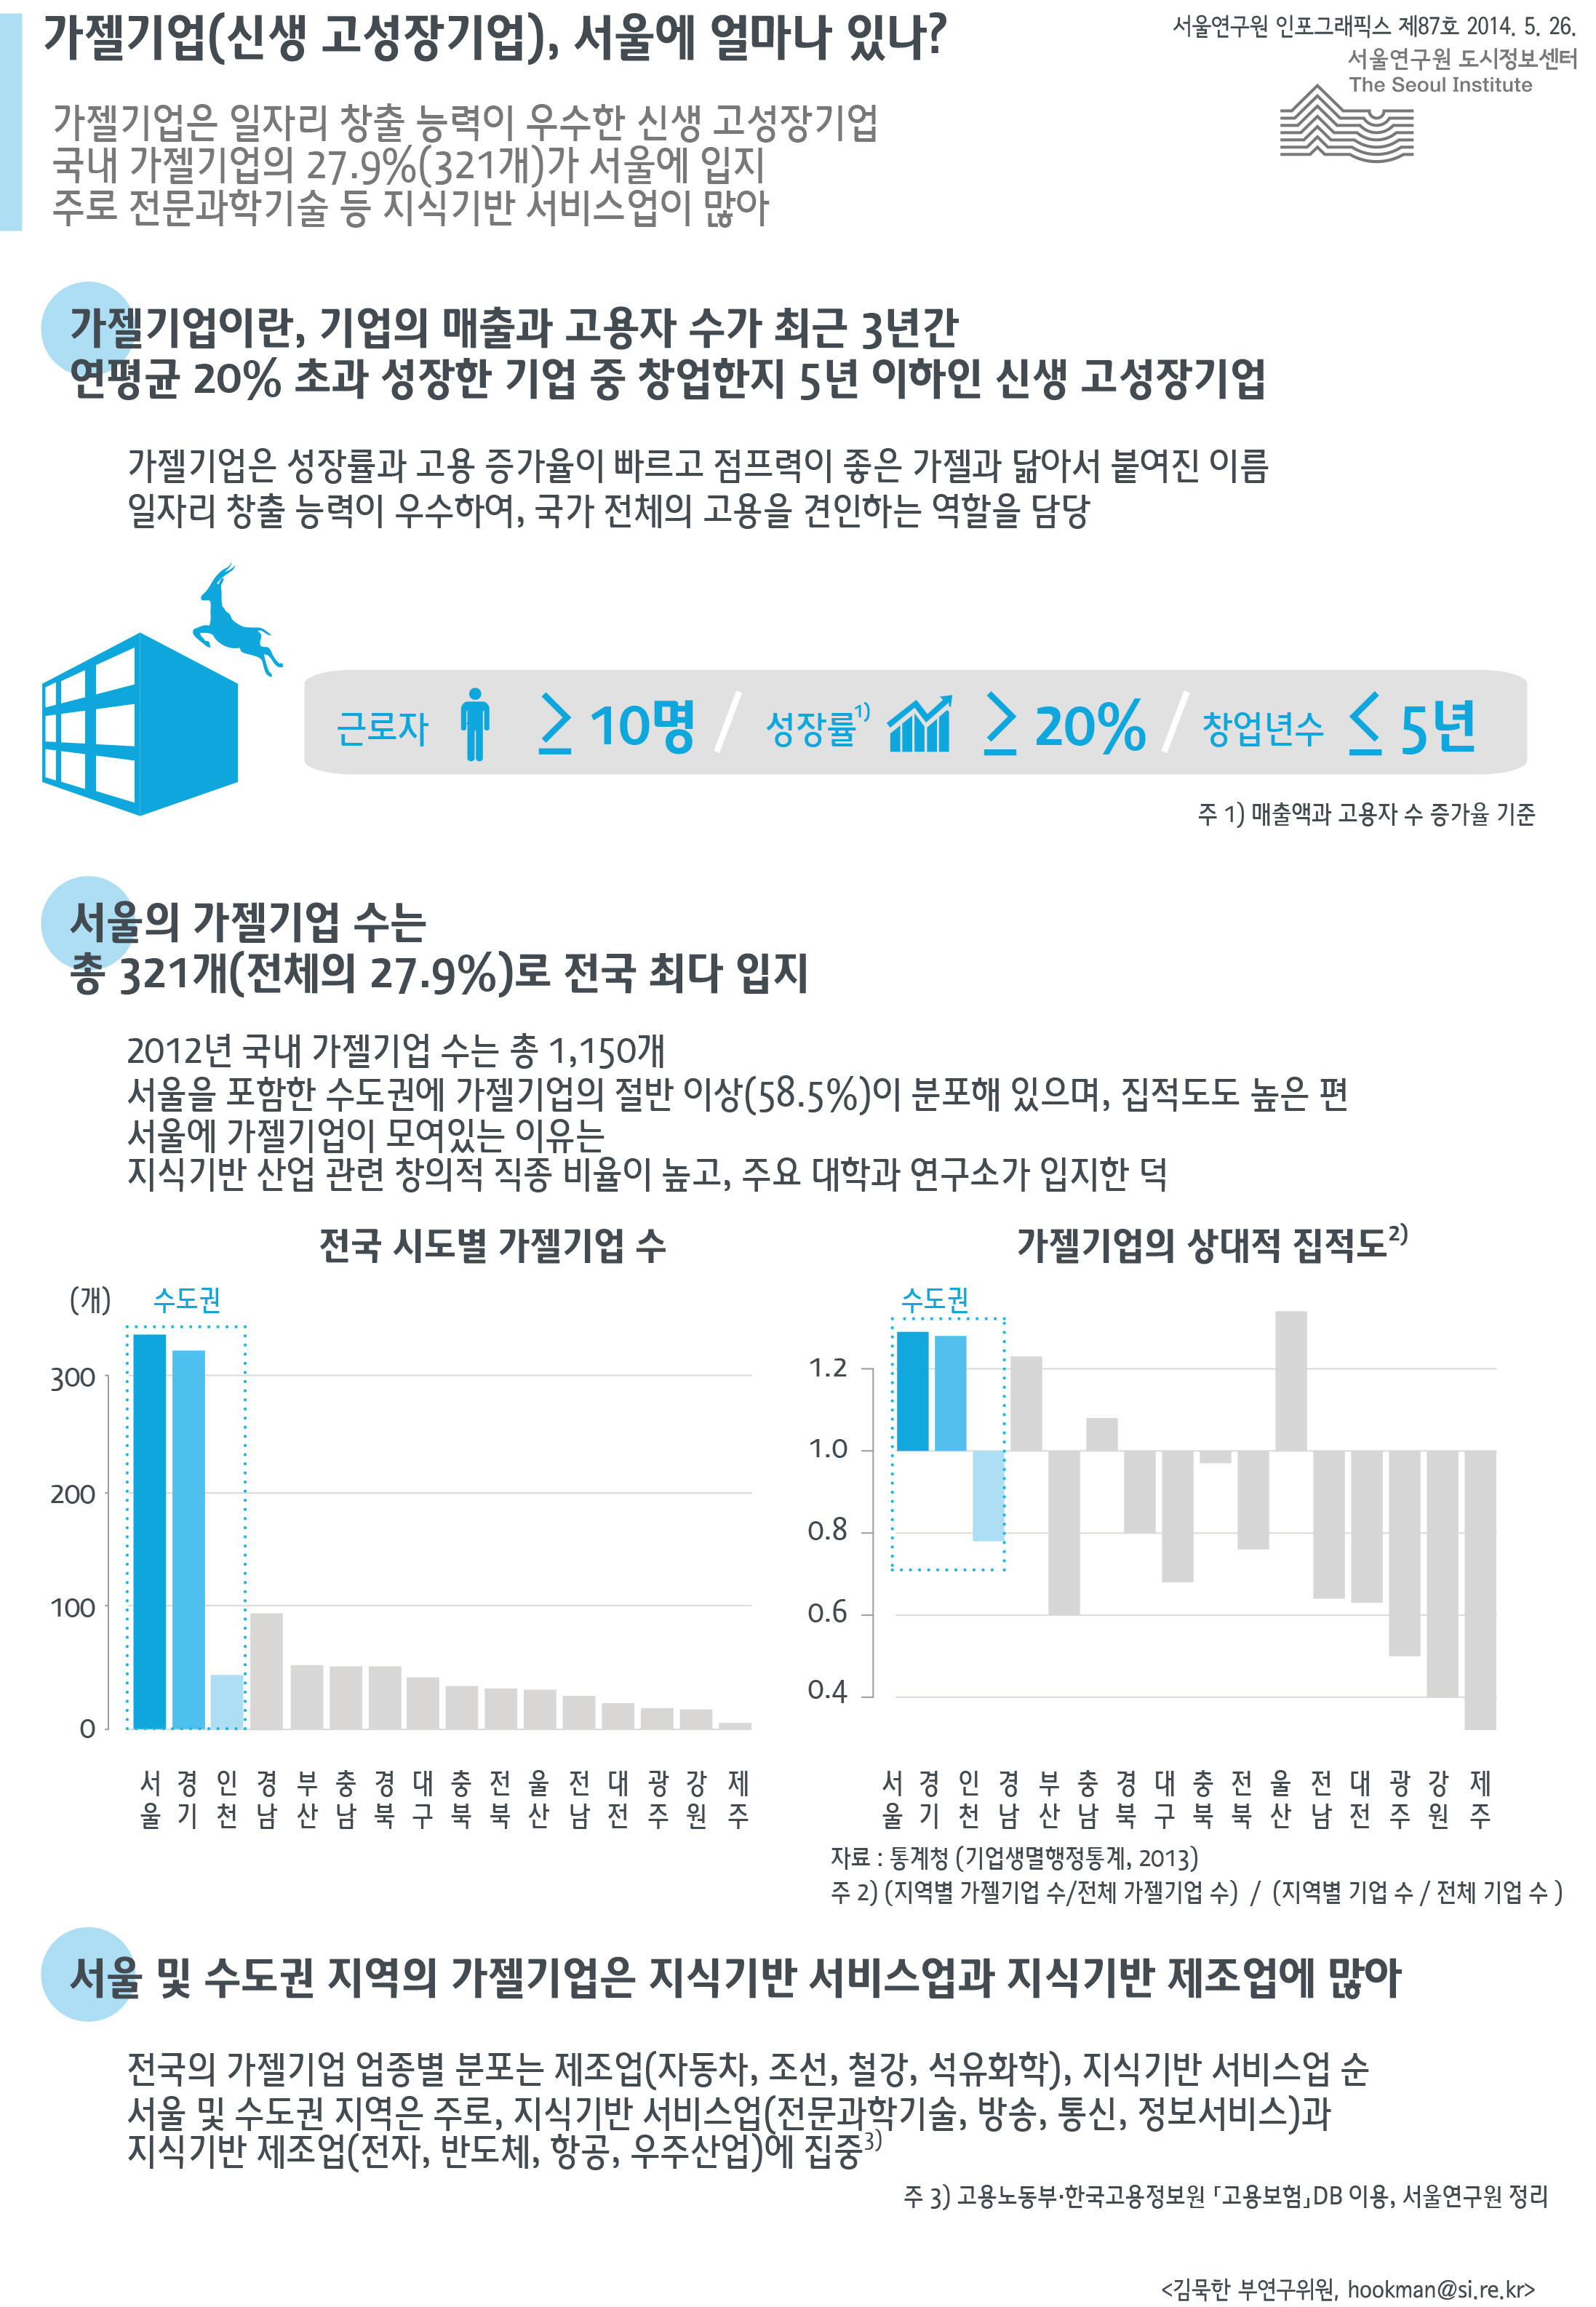 가젤기업(신생 고성장기업), 서울에 얼마나 입지해 있나? 서울인포그래픽스 제87호 2014년 5월 26일 가젤기업은 일자리 창출 능력이 우수한 신생 고성장기업. 국내 가젤기업의 27.9%(321개)가 서울에 입지. 주로 전문과학기술 등 지식기반 서비스업이 많음으로 정리될 수 있습니다. 인포그래픽으로 제공되는 그래픽은 하단에 표로 자세히 제공됩니다.